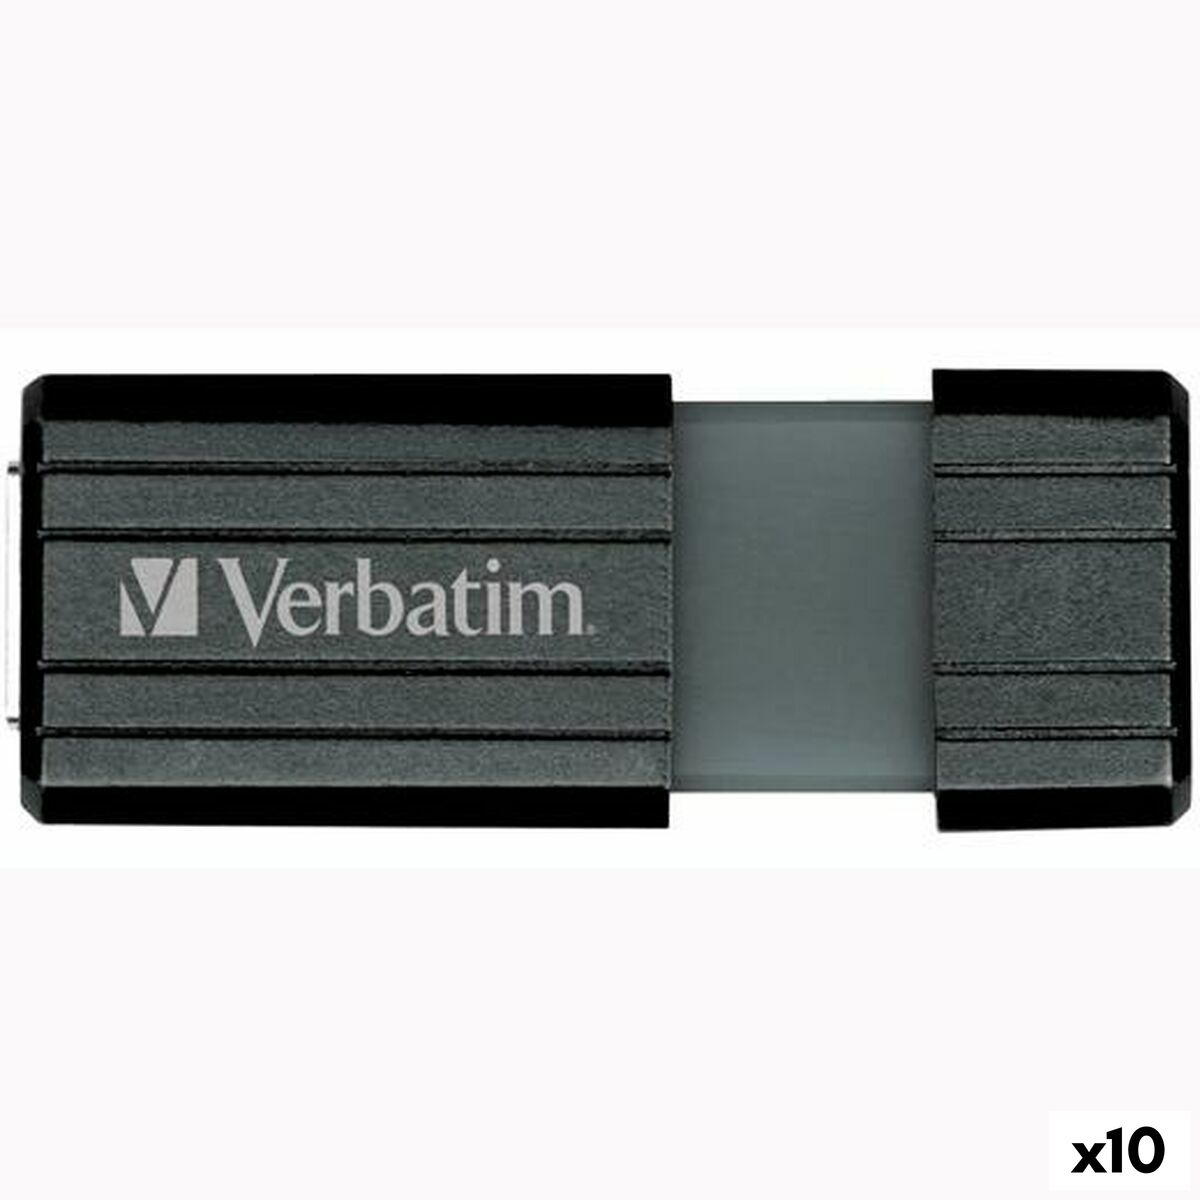 Tuntitarjouksena verkkokaupassamme Korhone: Tietokoneet & Elektroniikka on USB-tikku Verbatim PinStripe Musta 32 GB